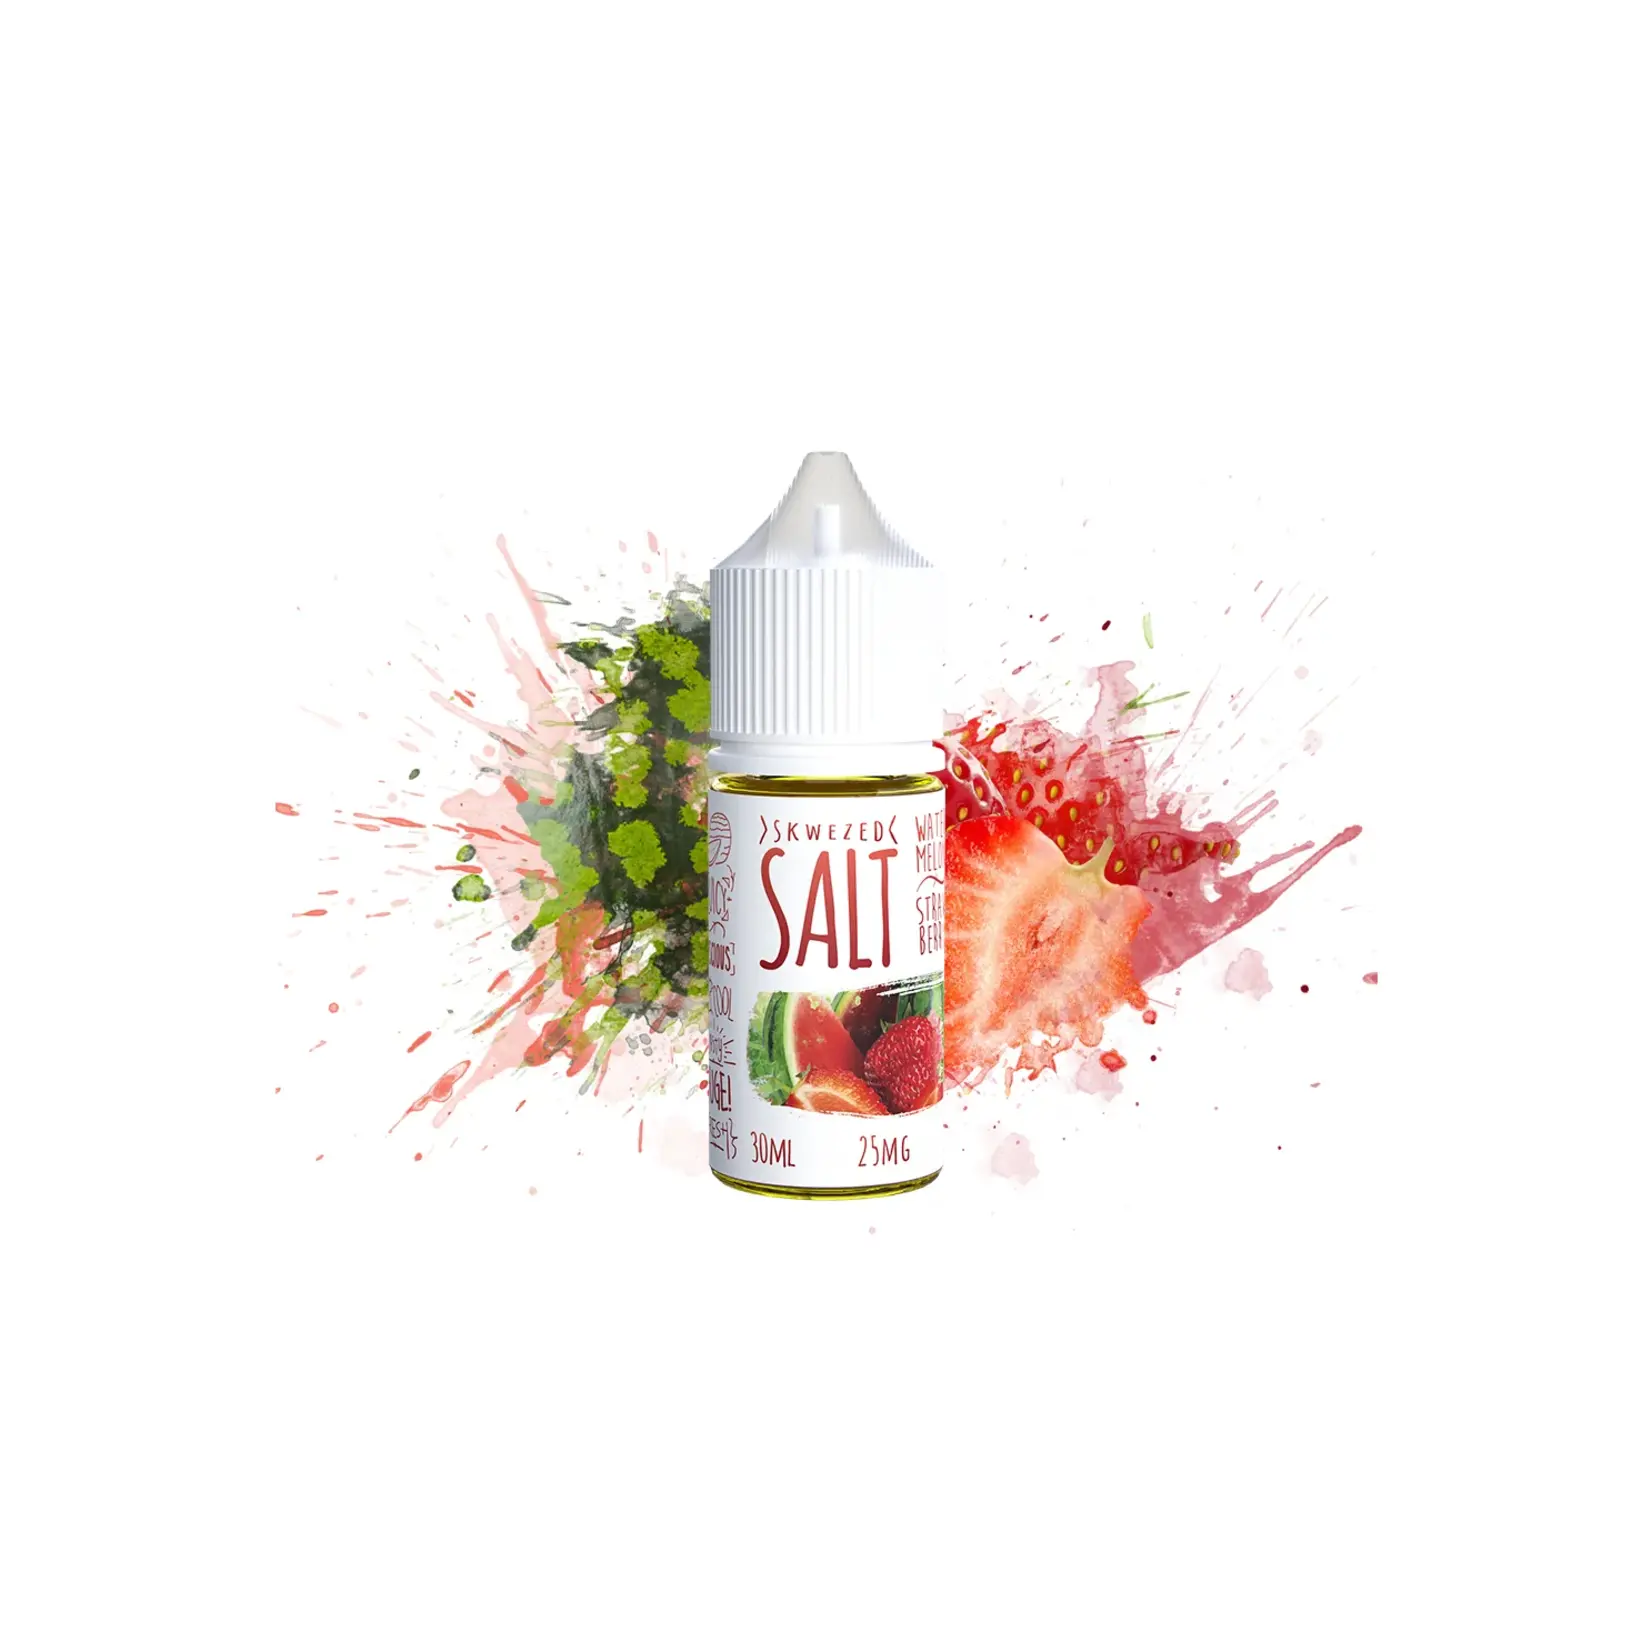 Skwezed Mix Salt 30ml